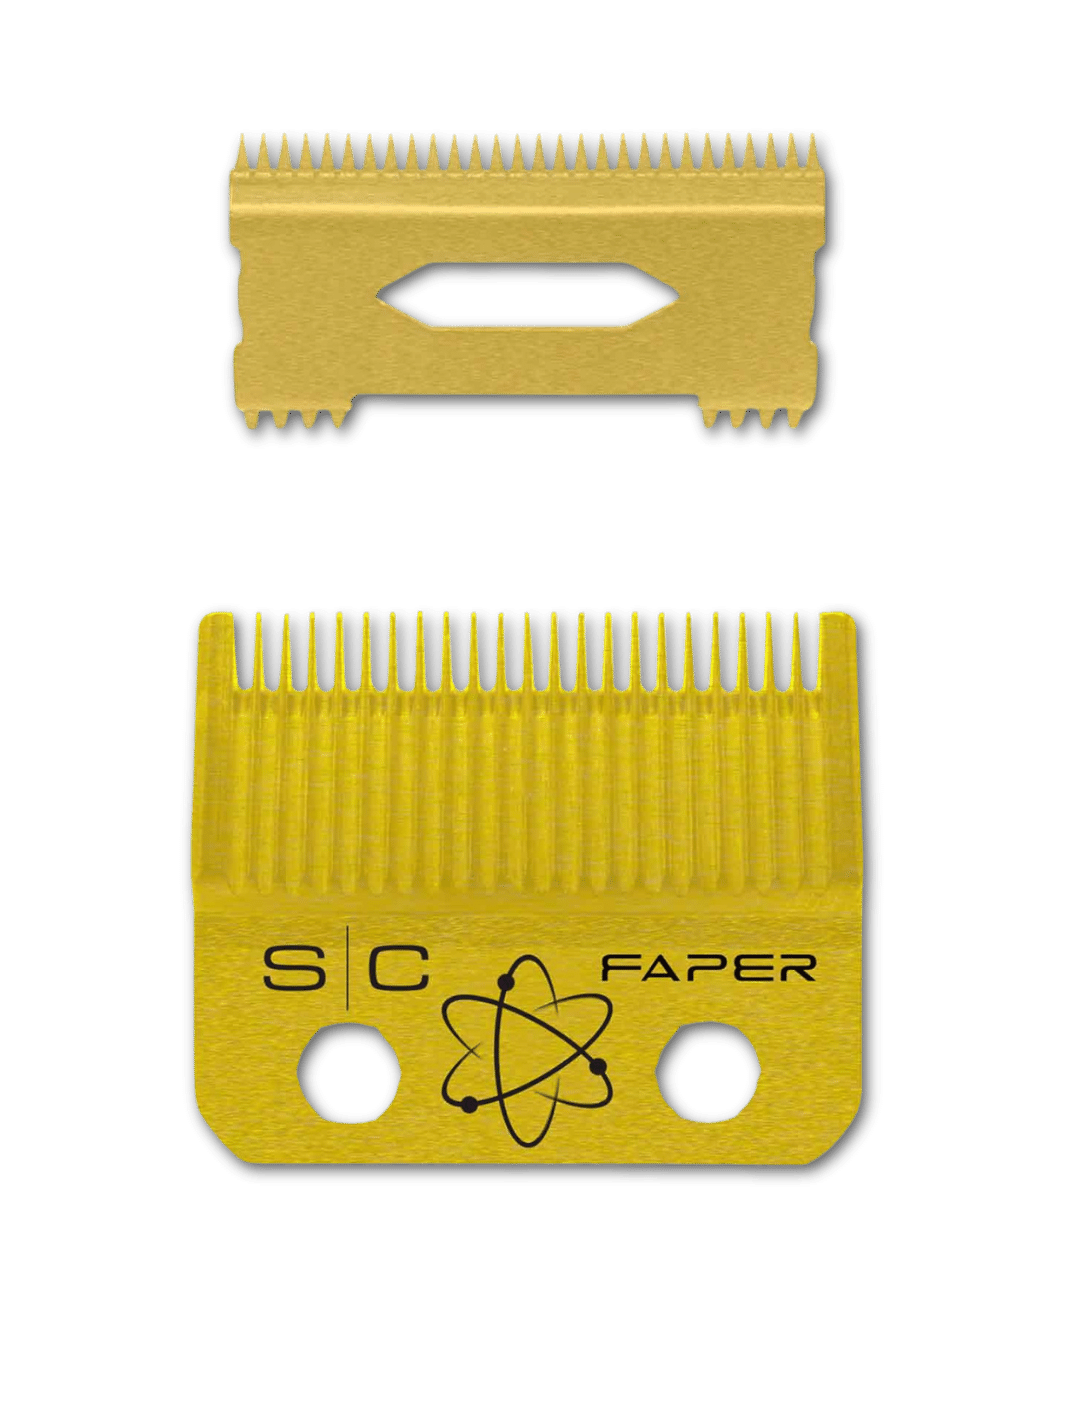 STYLECRAFT FAPER Gold und Slim Deep Gold Blade, zwei professionelle Gold Titanium Haarschneiderklingen, ideal für präzise Fade- und Taper-Schnitte, kompatibel mit Stylecraft Profi-Haarschneidemaschinen.